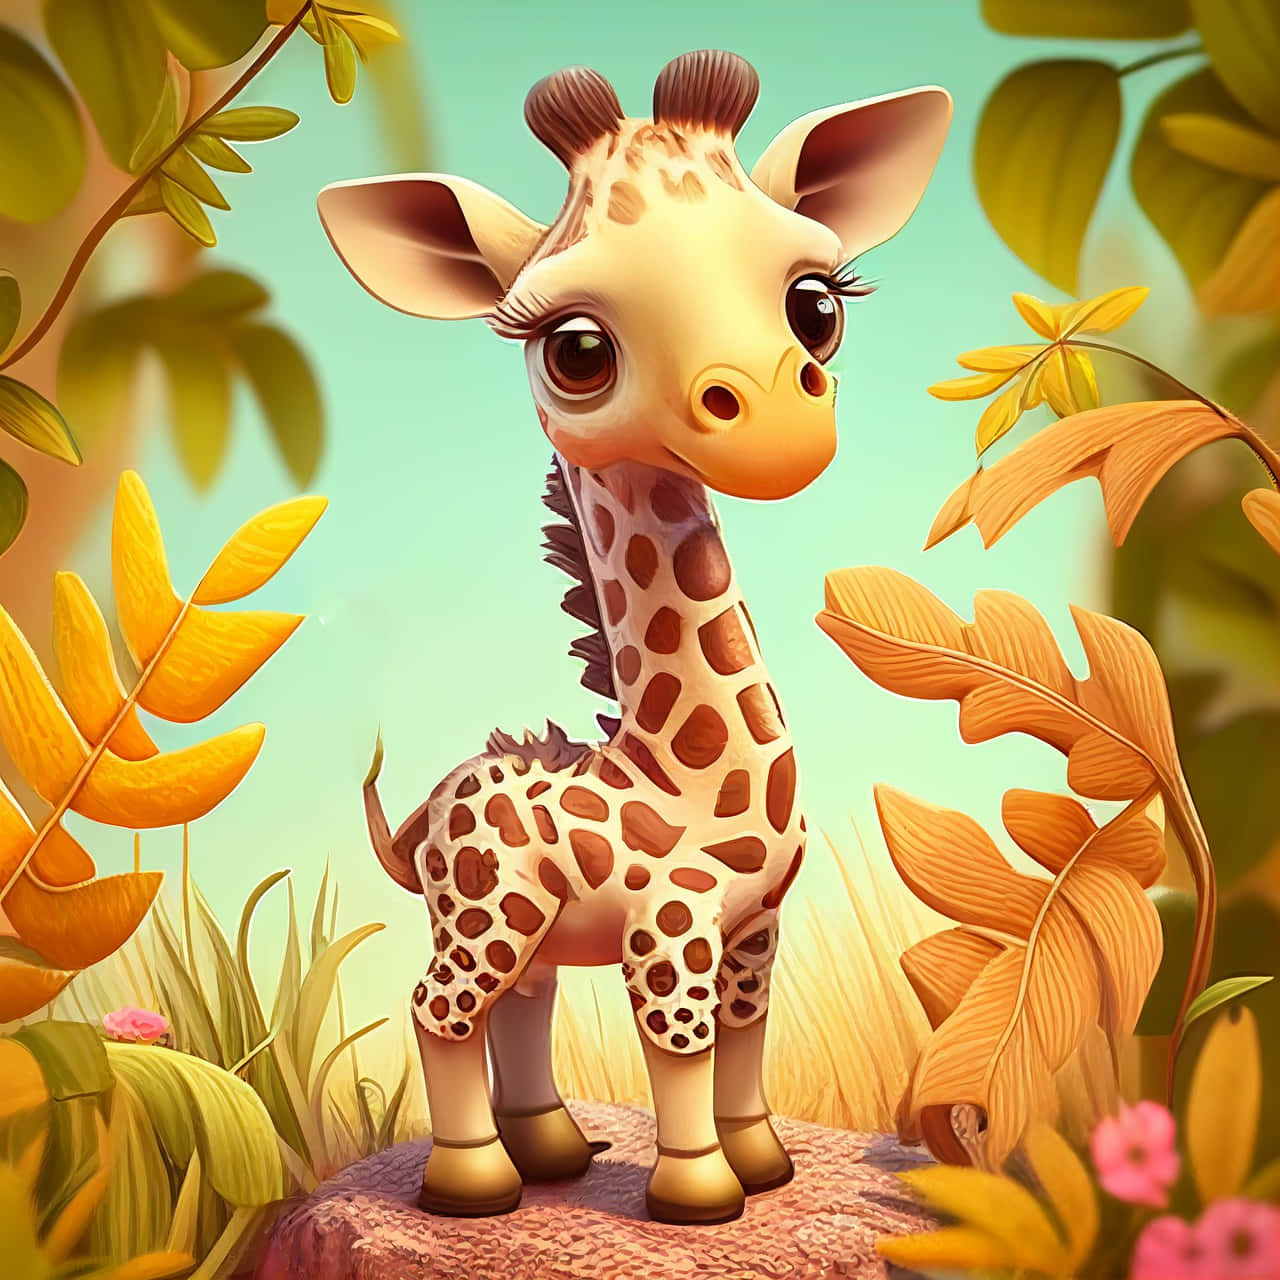 Download Cute Baby Giraffe 3d Cartoon Art Wallpaper 